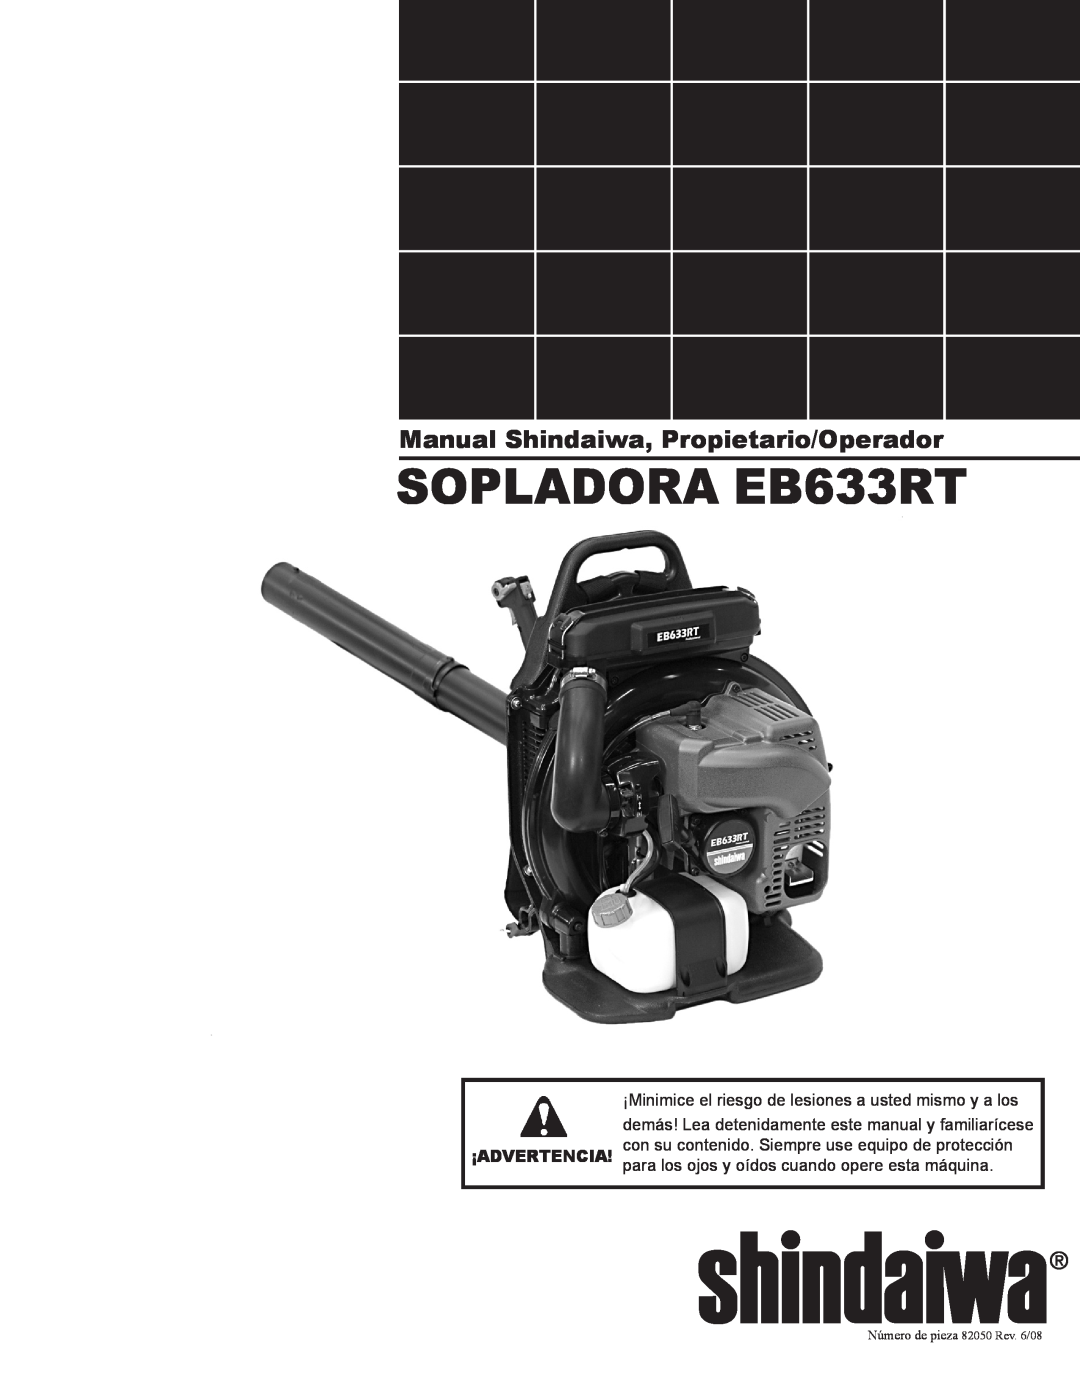 Shindaiwa 82050 SOPLADORA EB633RT, Manual Shindaiwa, Propietario/Operador, para los ojos y oídos cuando opere esta máquina 